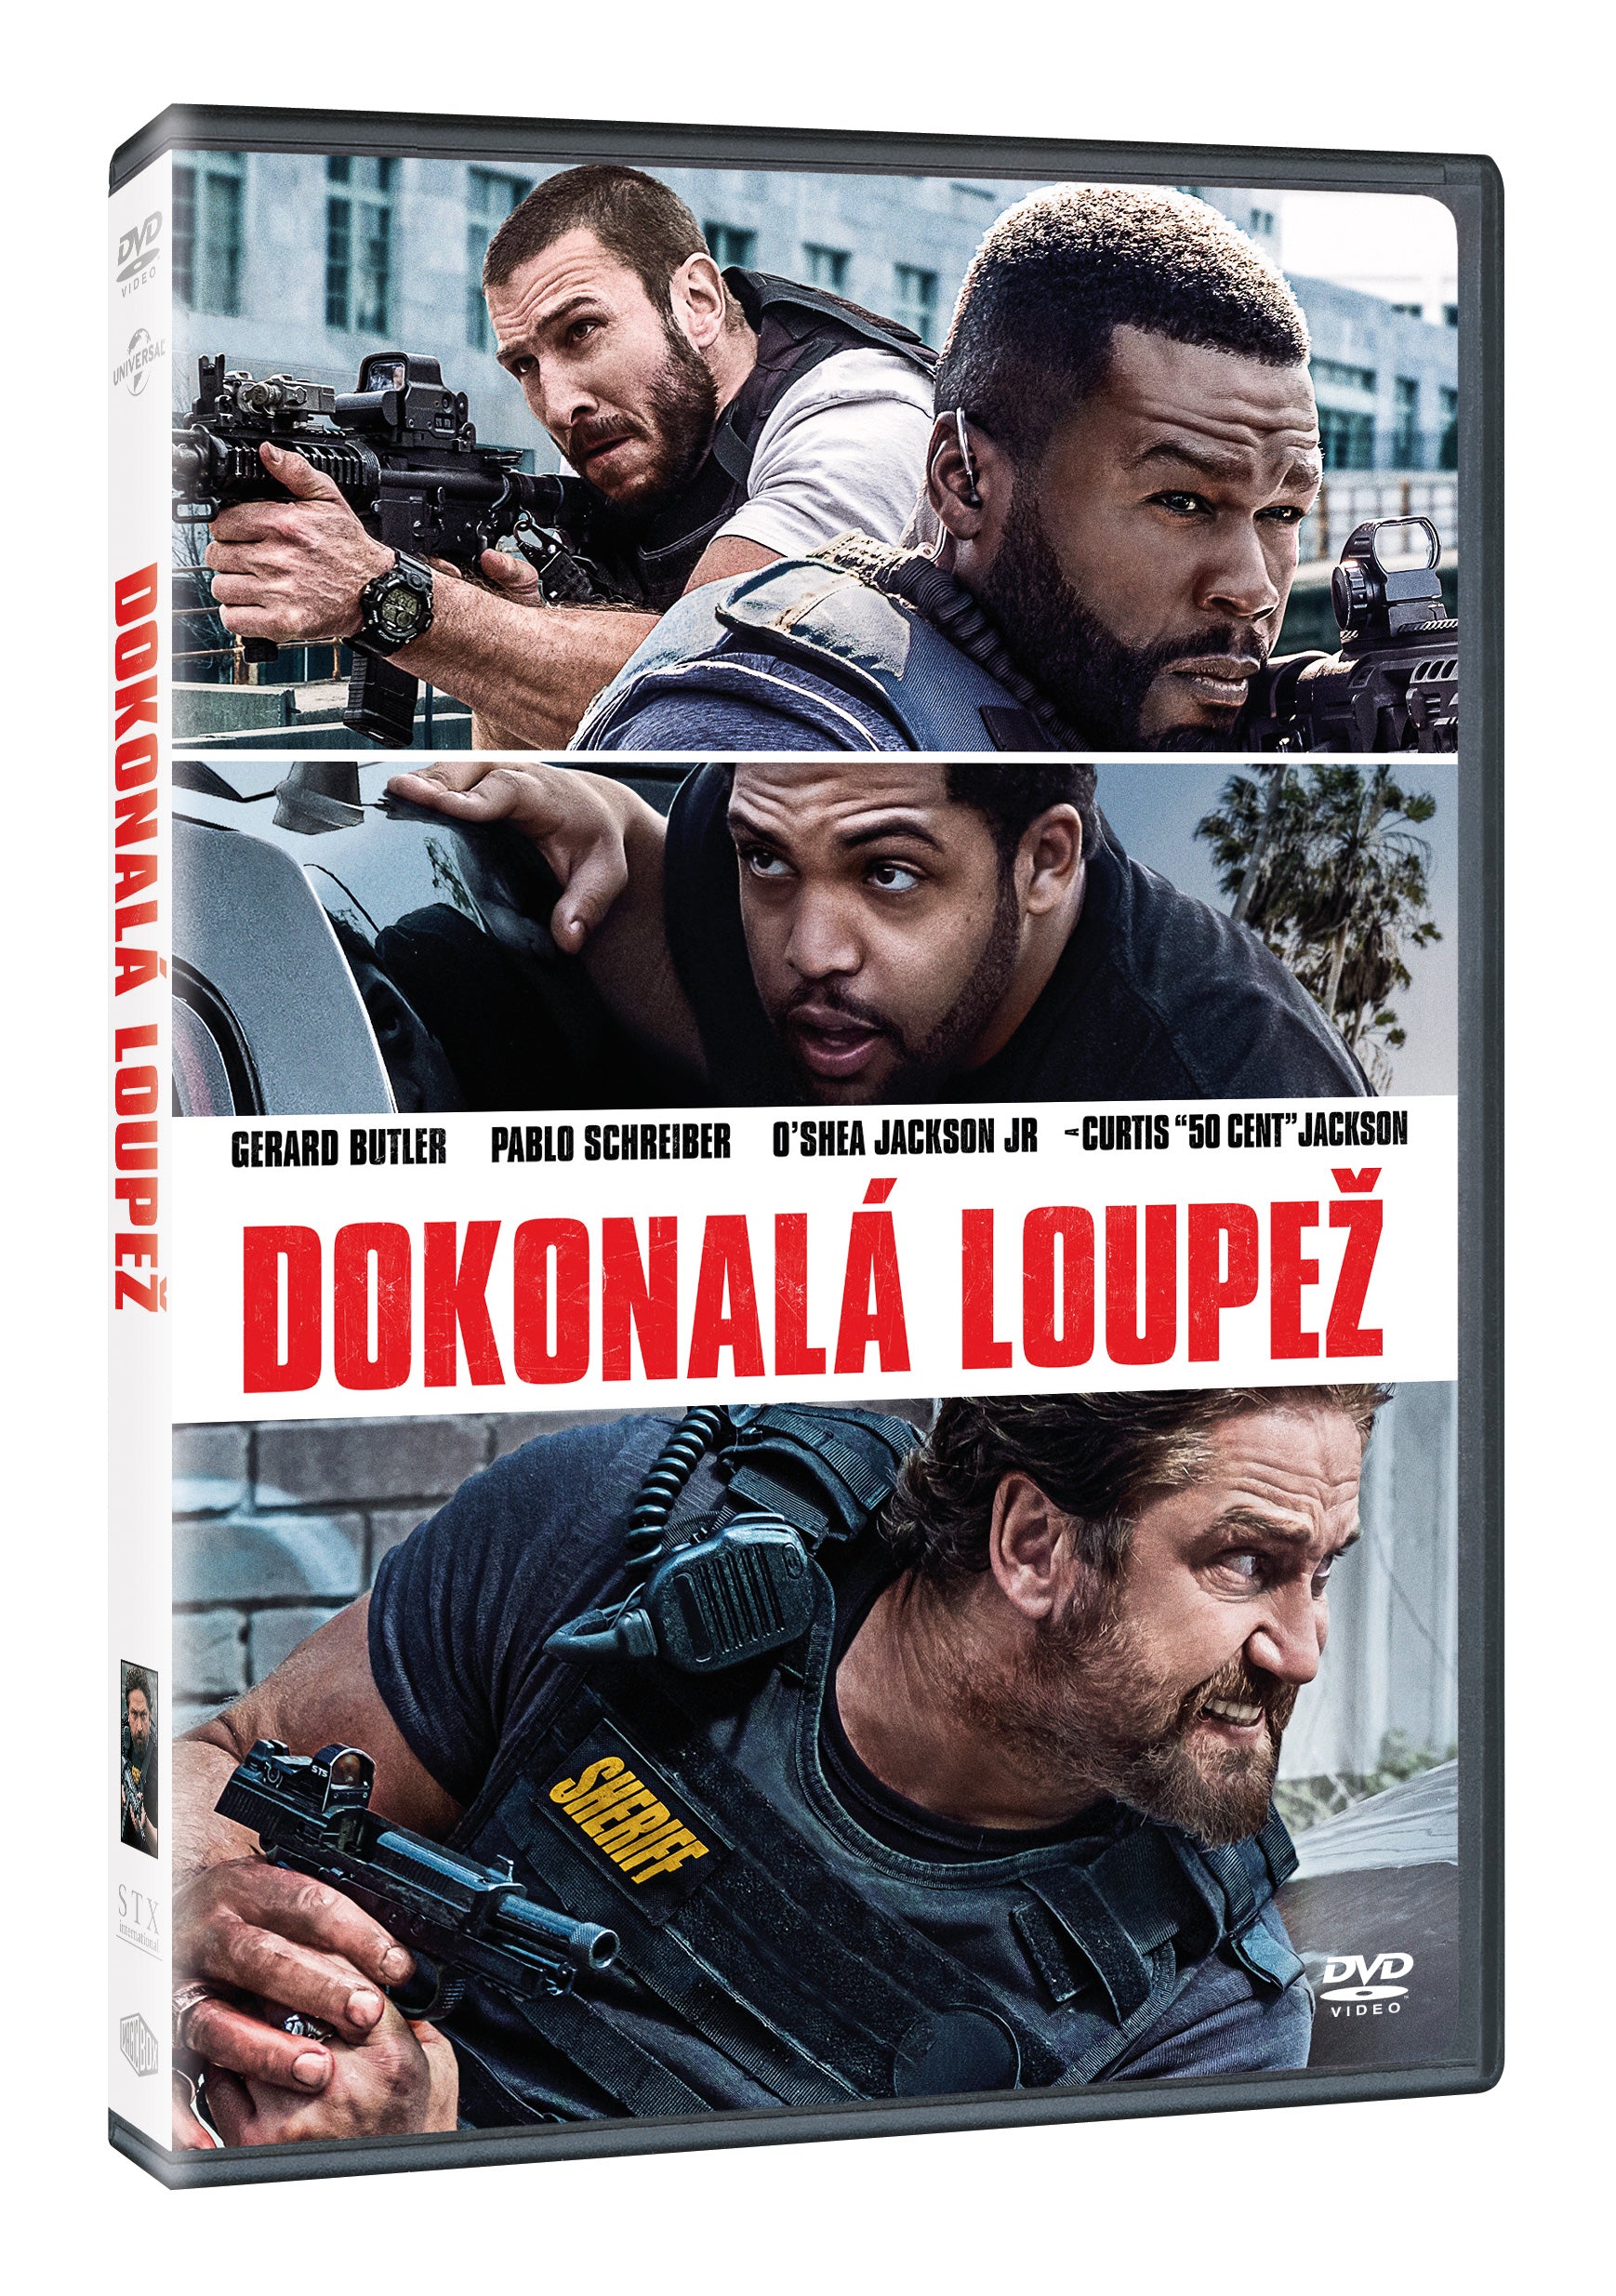 Dokonala Loupez DVD / Den of Thieves